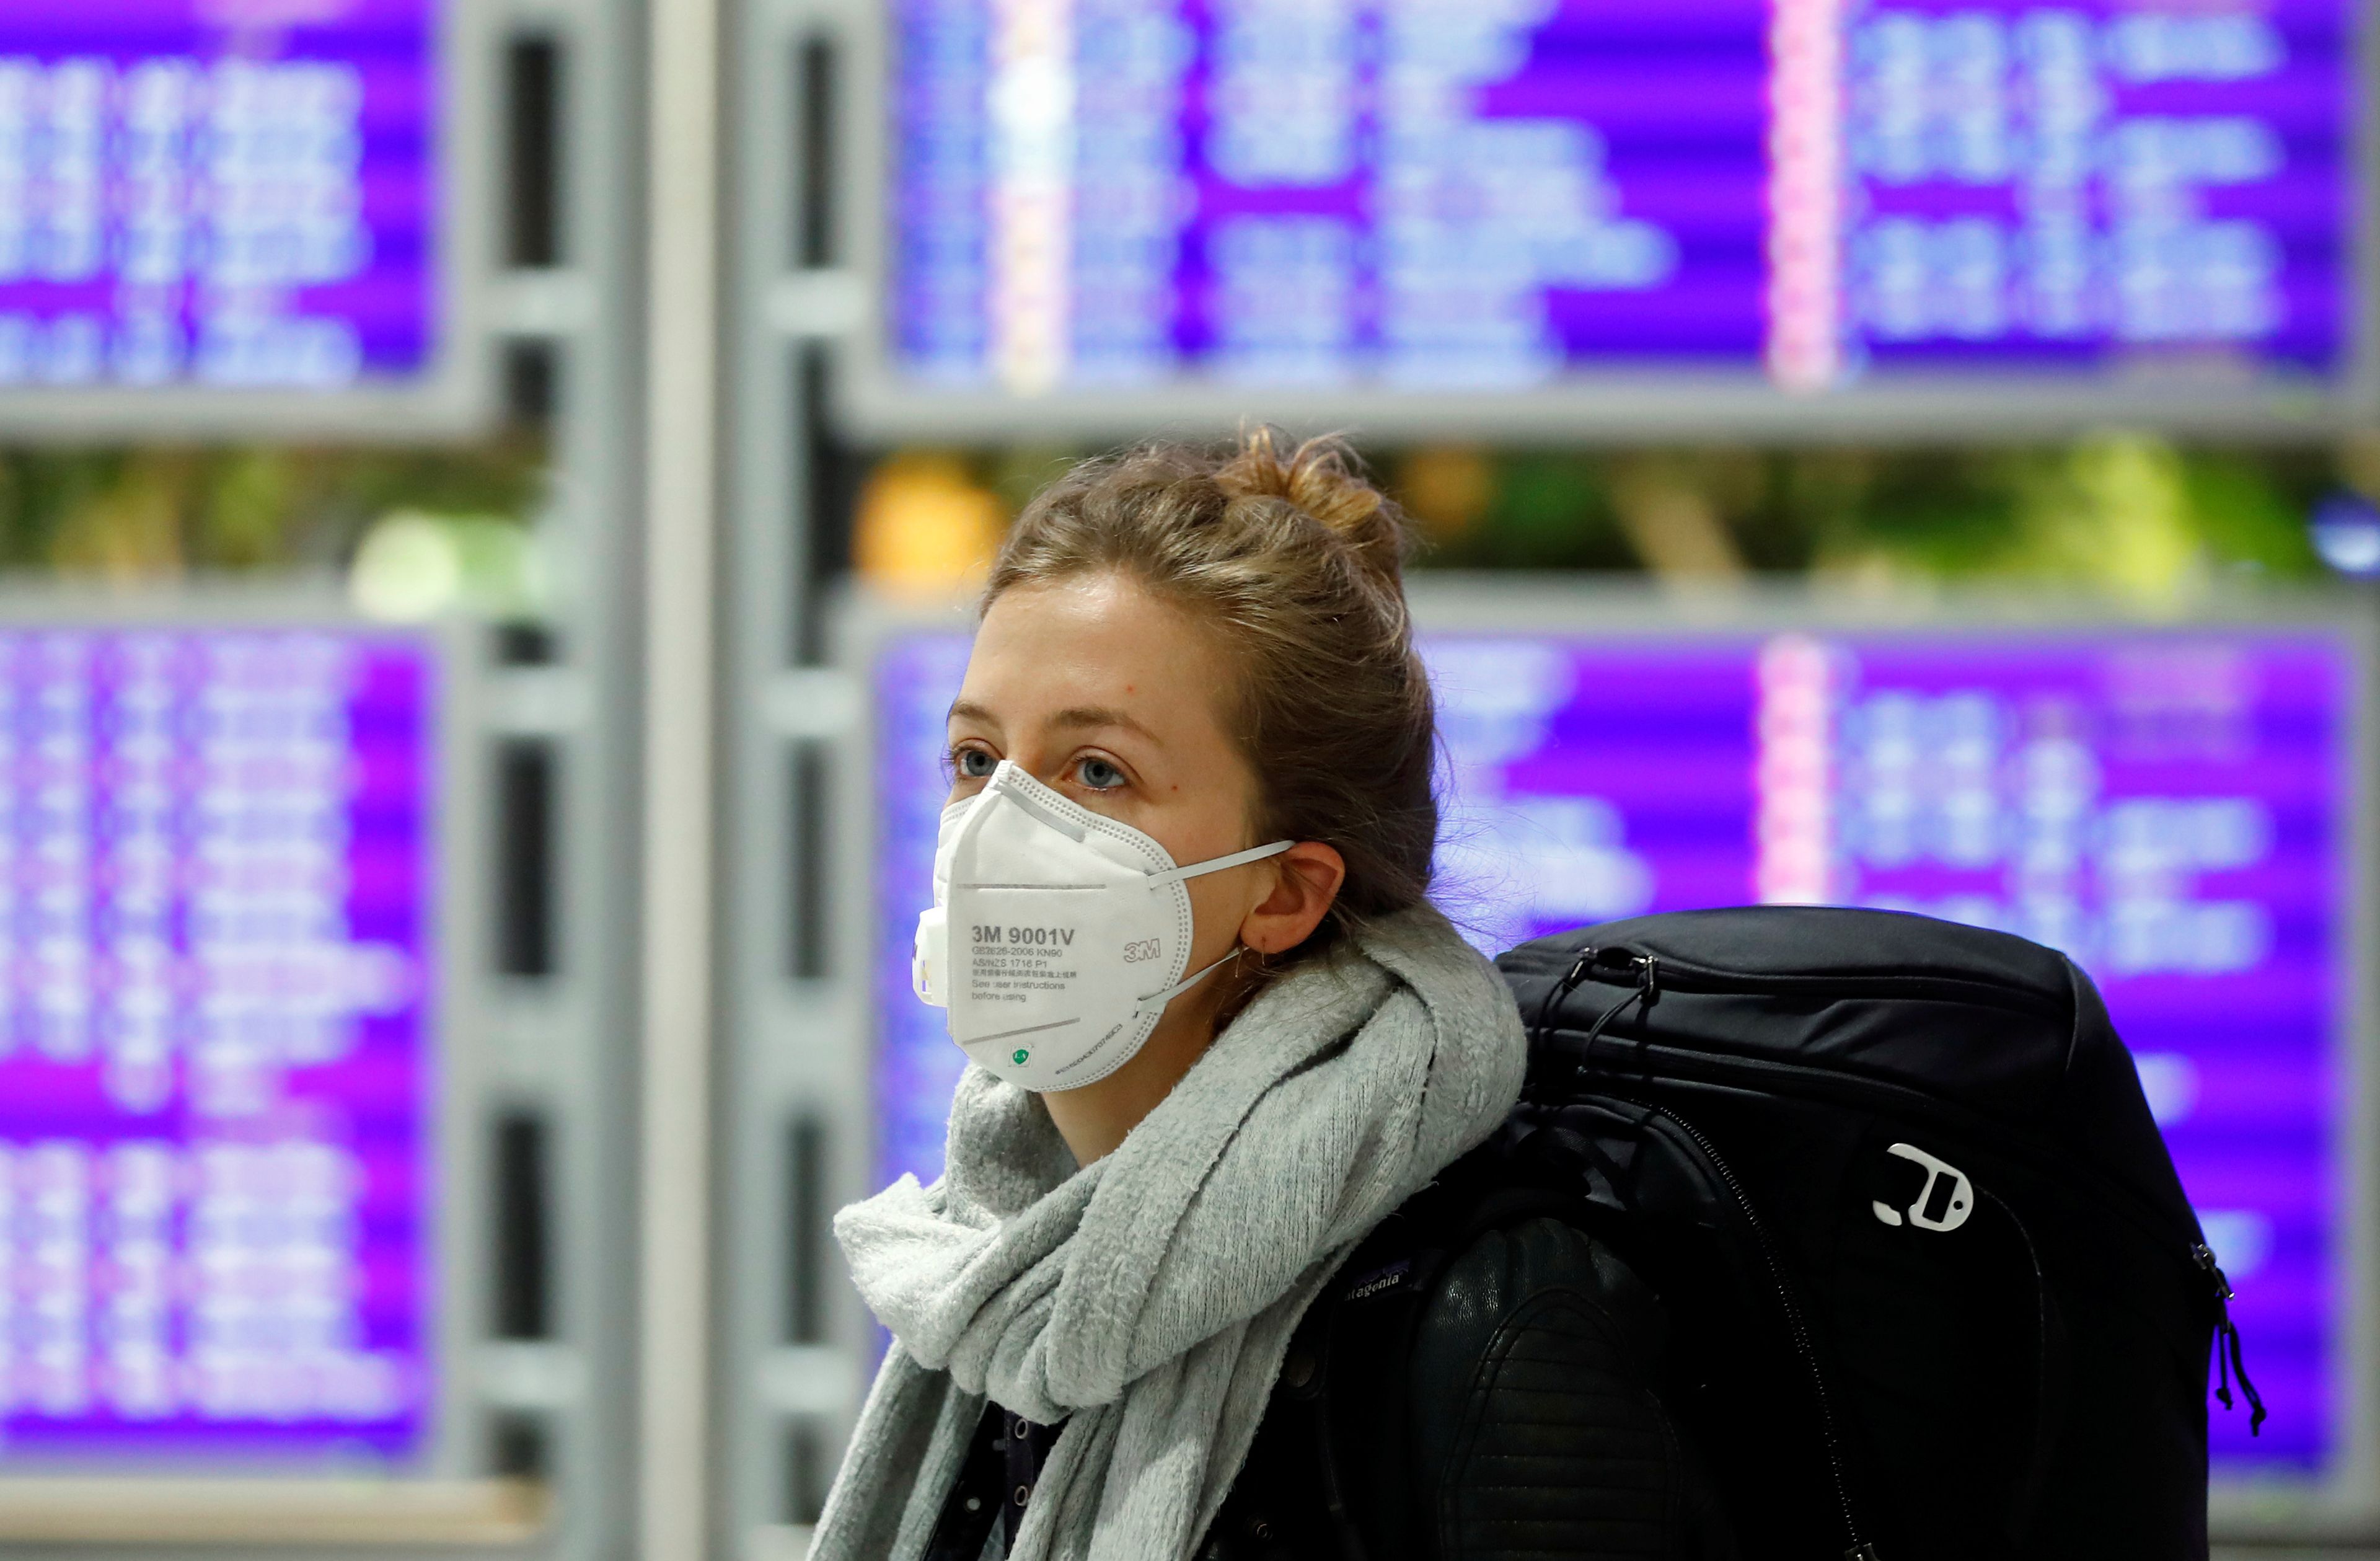 Una mujer con mascarilla por el coronavirus en un aeropuerto.